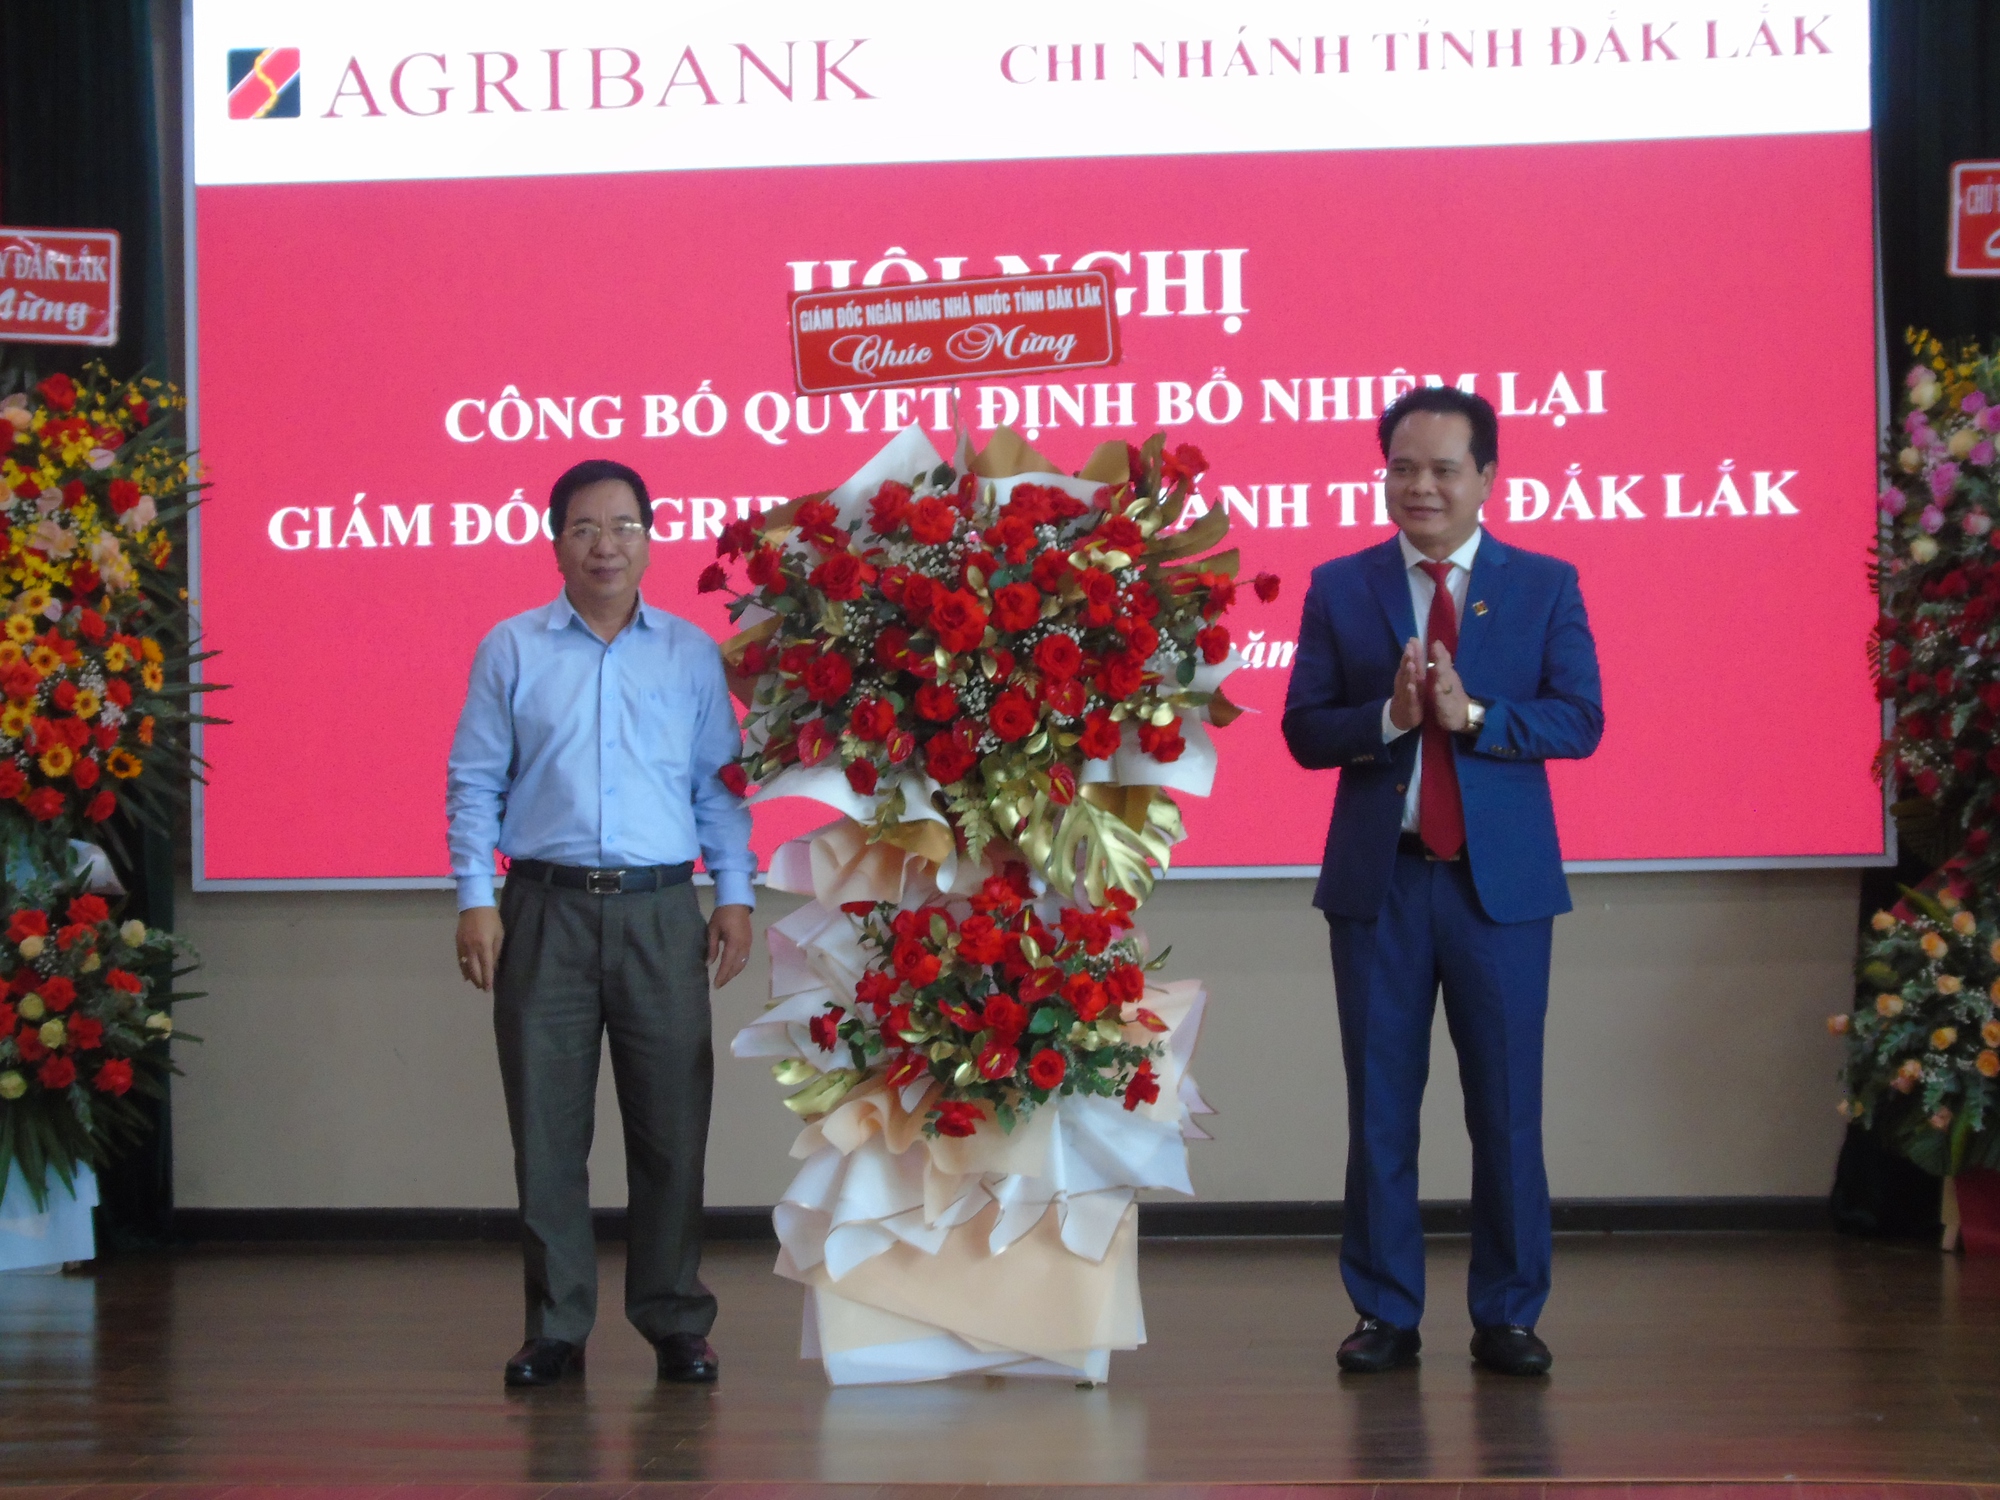 Ông Vương Hồng Lĩnh được bổ nhiệm lại chức vụ Giám đốc Agribank Chi nhánh tỉnh Đắk Lắk - Ảnh 4.